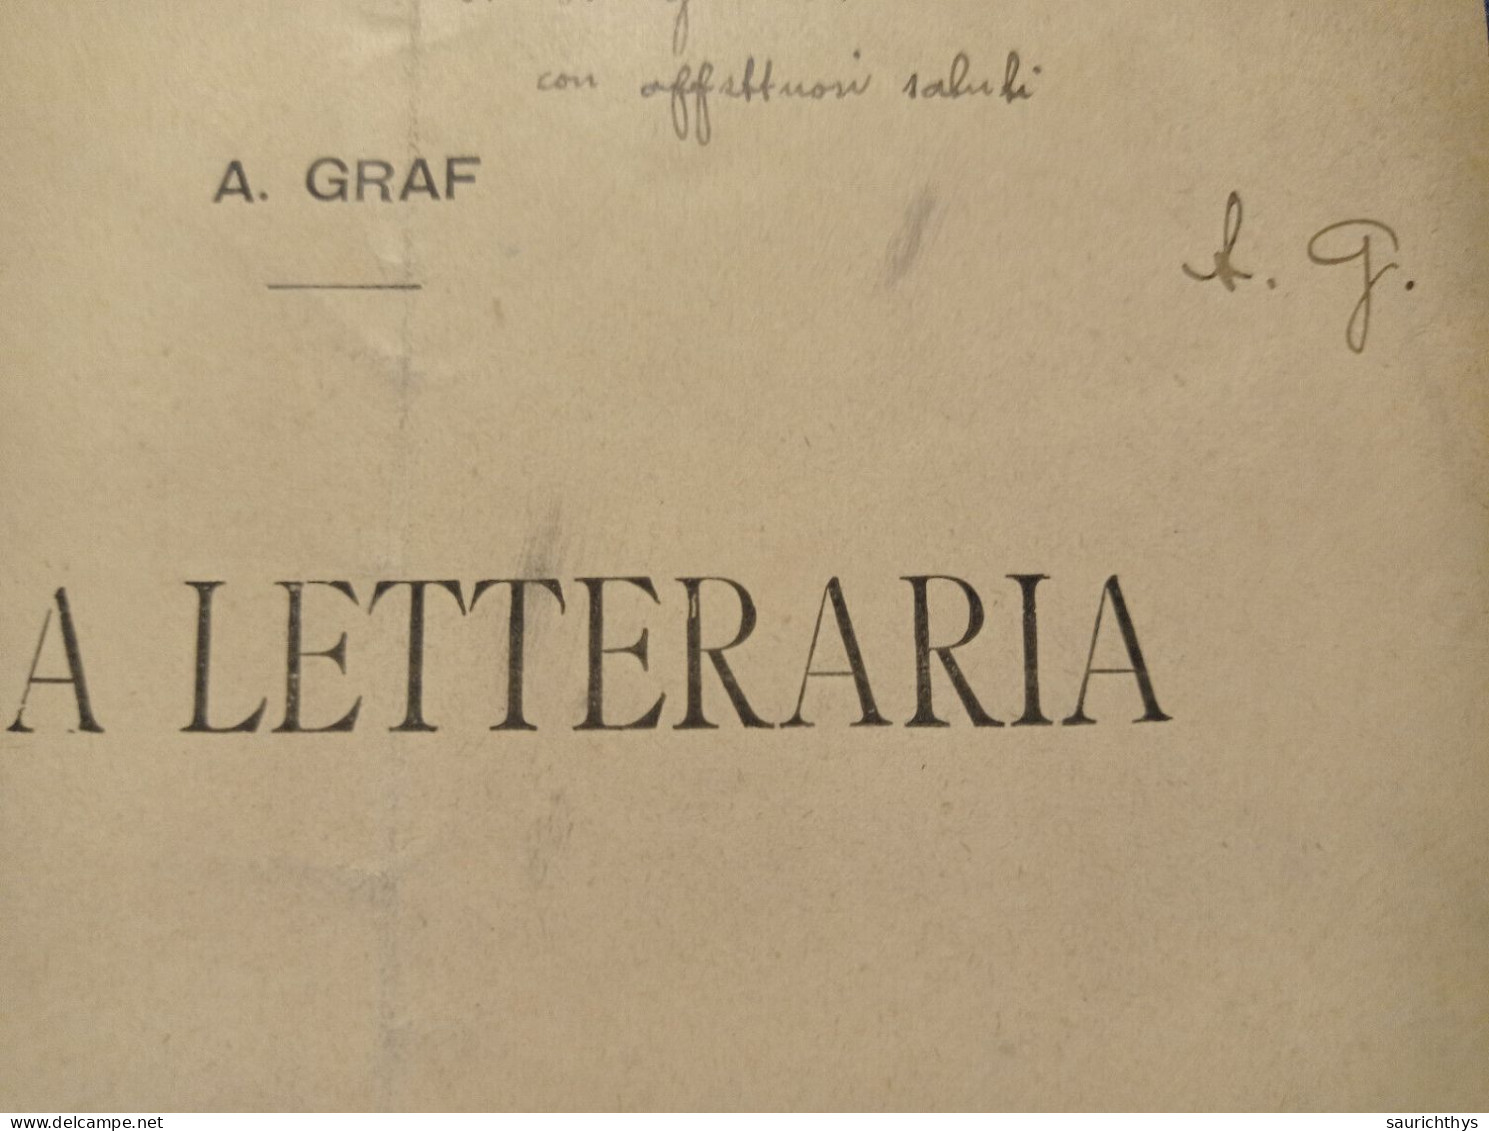 Dalla Nuova Antologia 1911 Notizia Letteraria Con Autografo Poeta E Critico Letterario Arturo Graf - Antichi